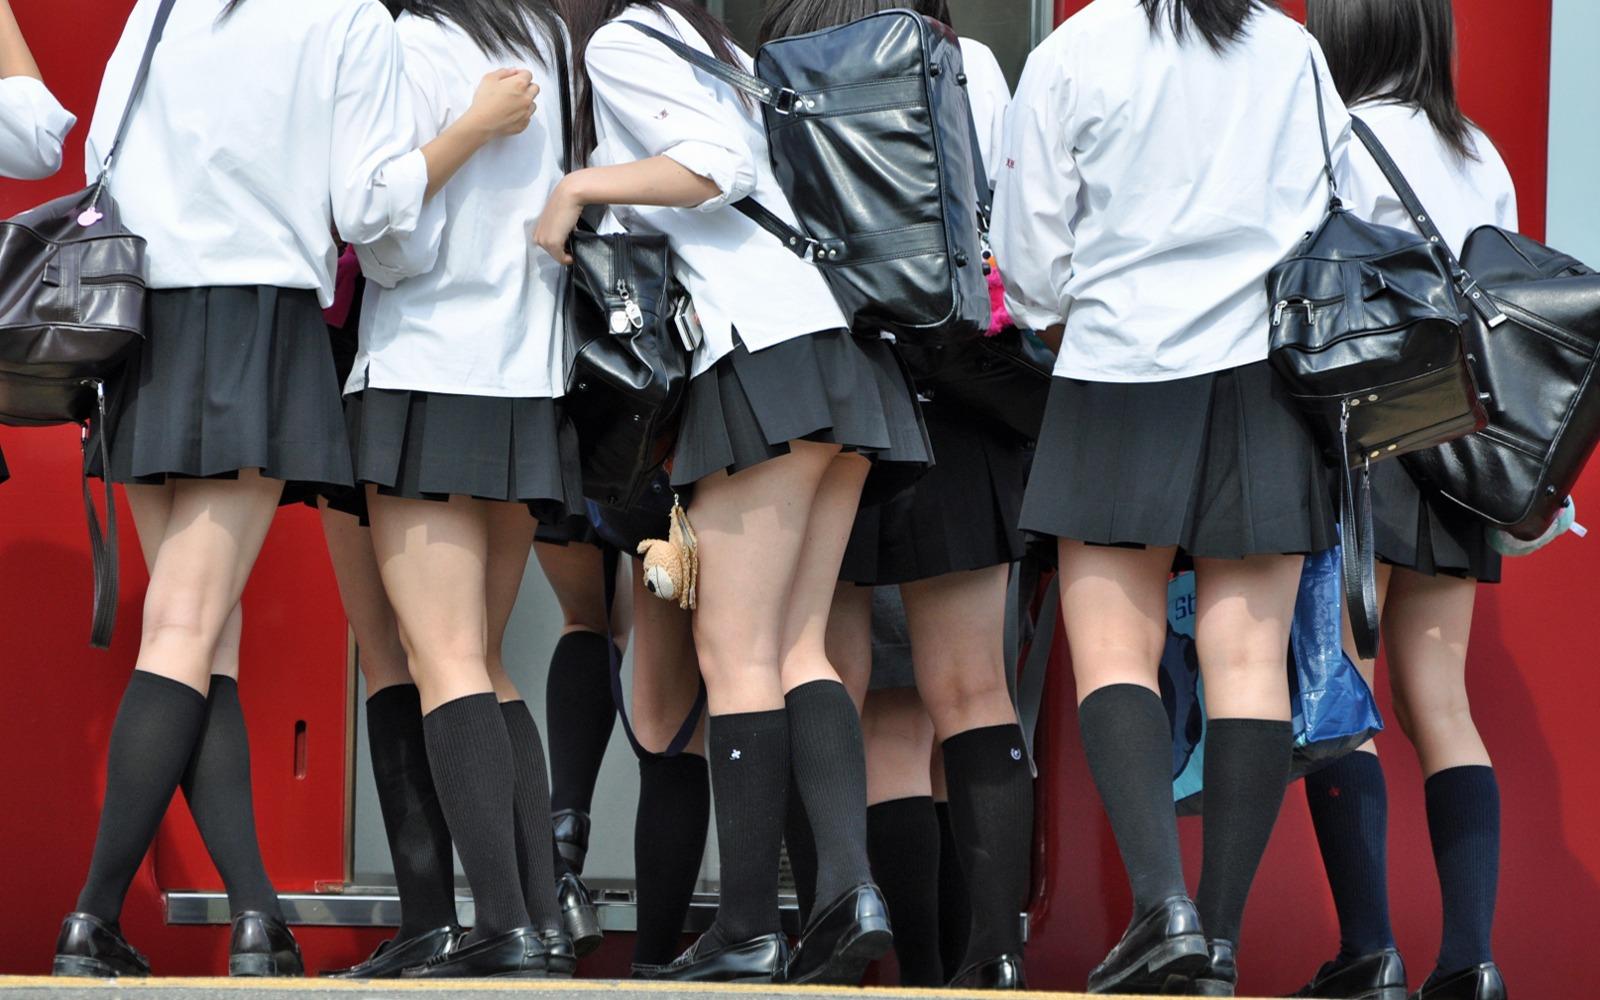 【画像・動画あり】 日本一JKの制服のスカート丈が短い県は何処なのか